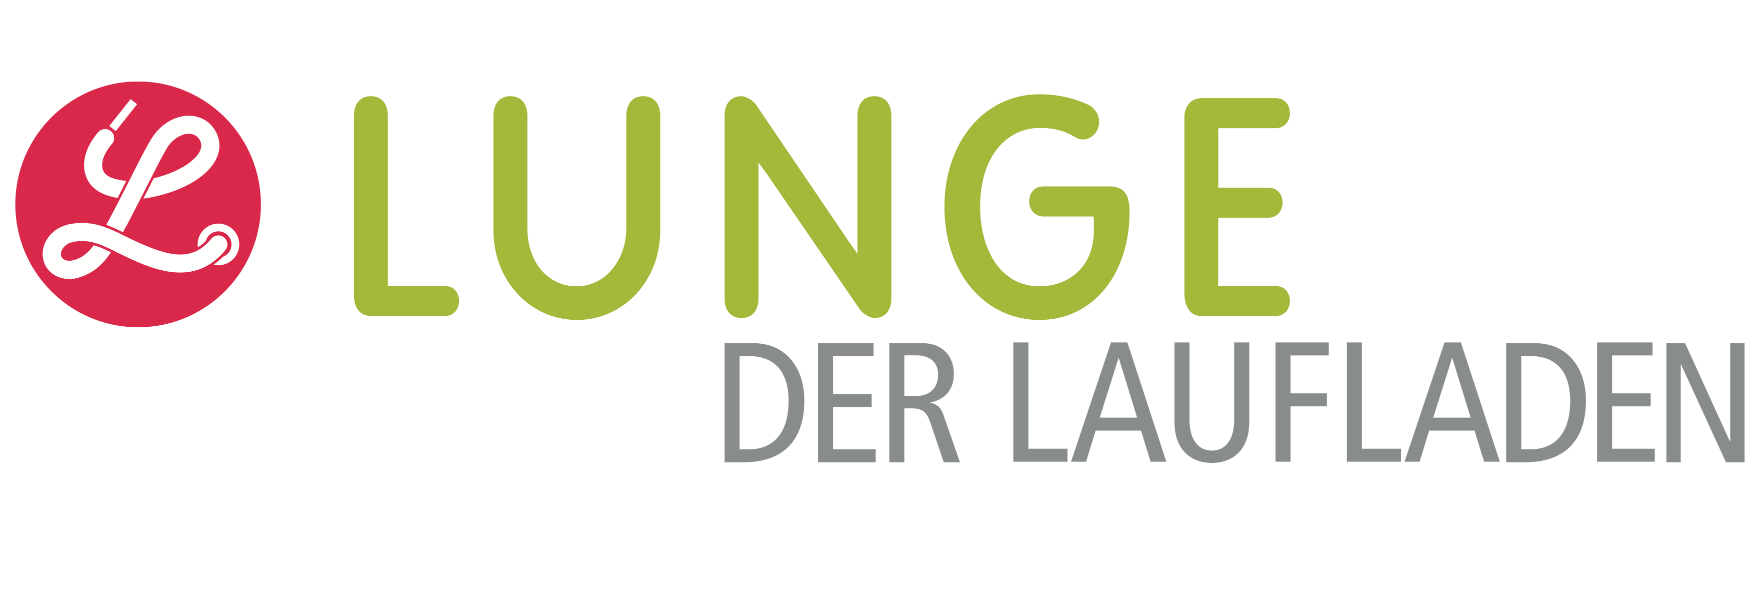 www.lunge.de